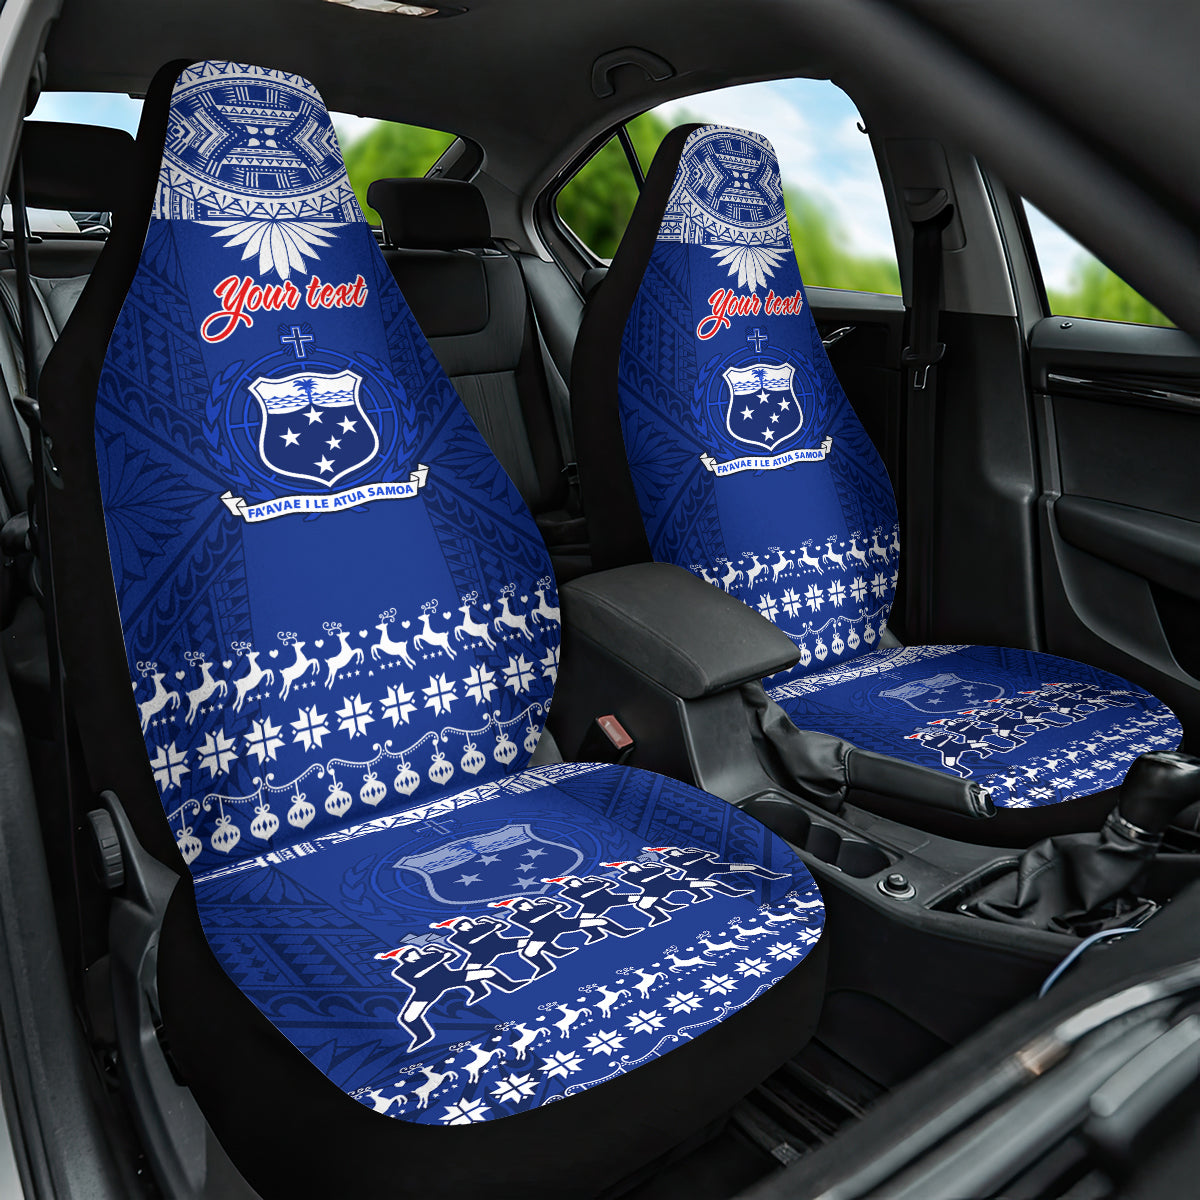 Personalised Toa Samoa Christmas Car Seat Cover Samoa Siva Tau Manuia Le Kerisimasi Blue Vibe LT9 One Size Blue - Polynesian Pride